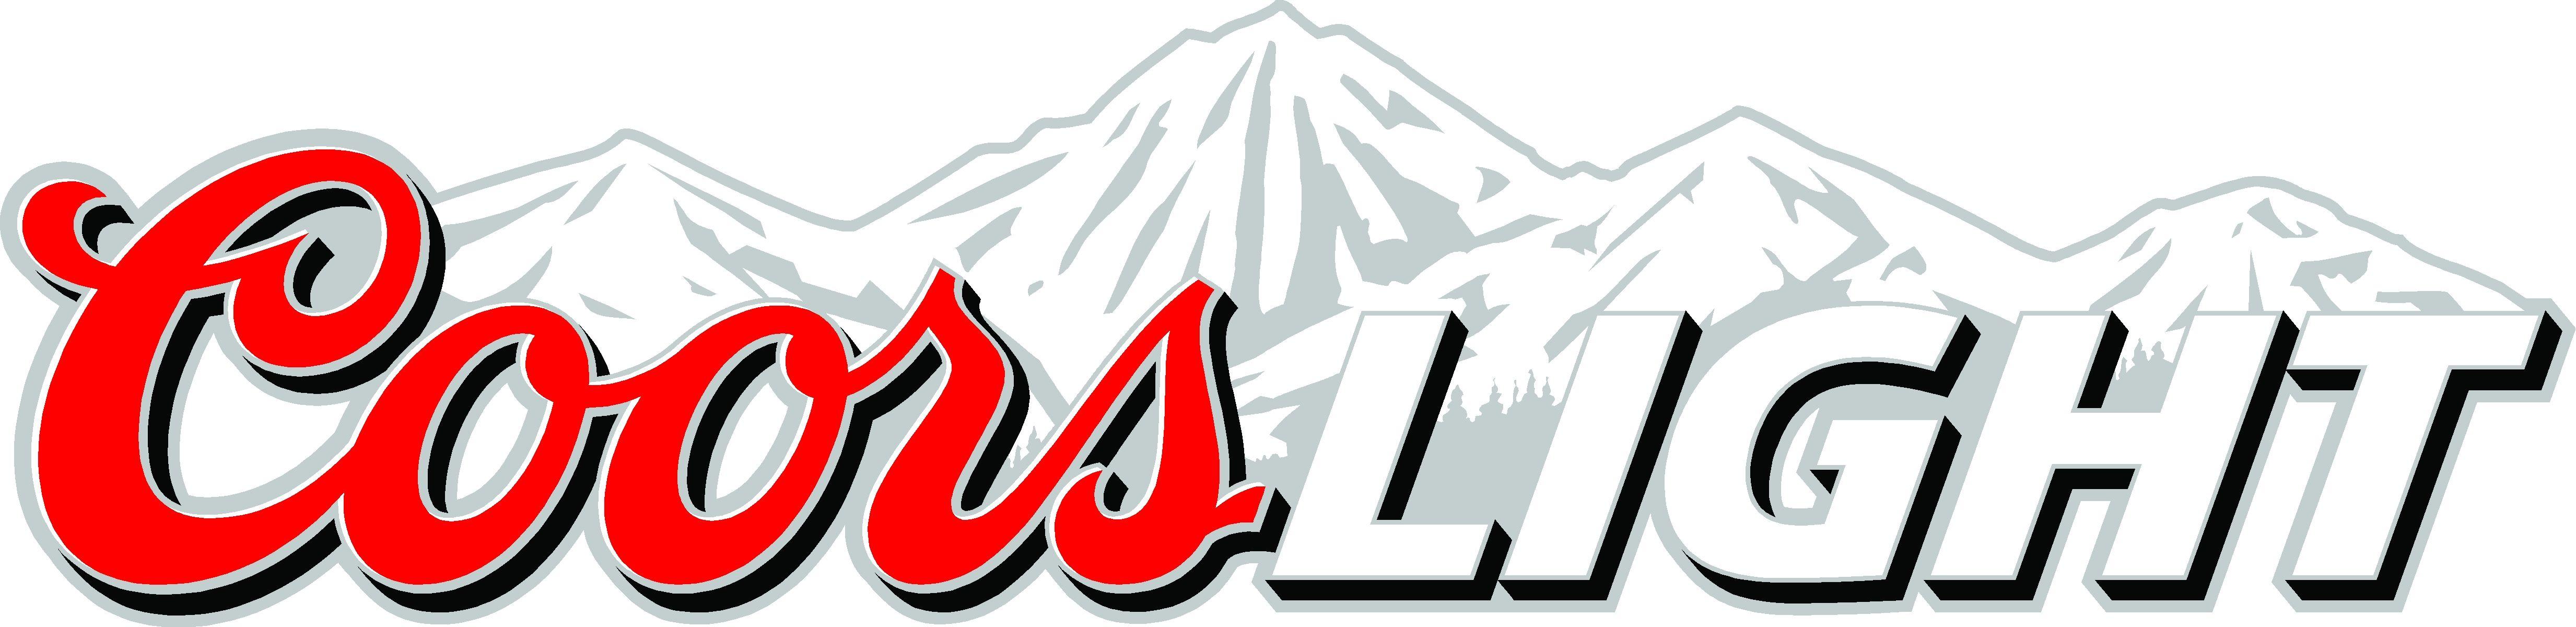 Coors Mountain Logo - Coors light Logos